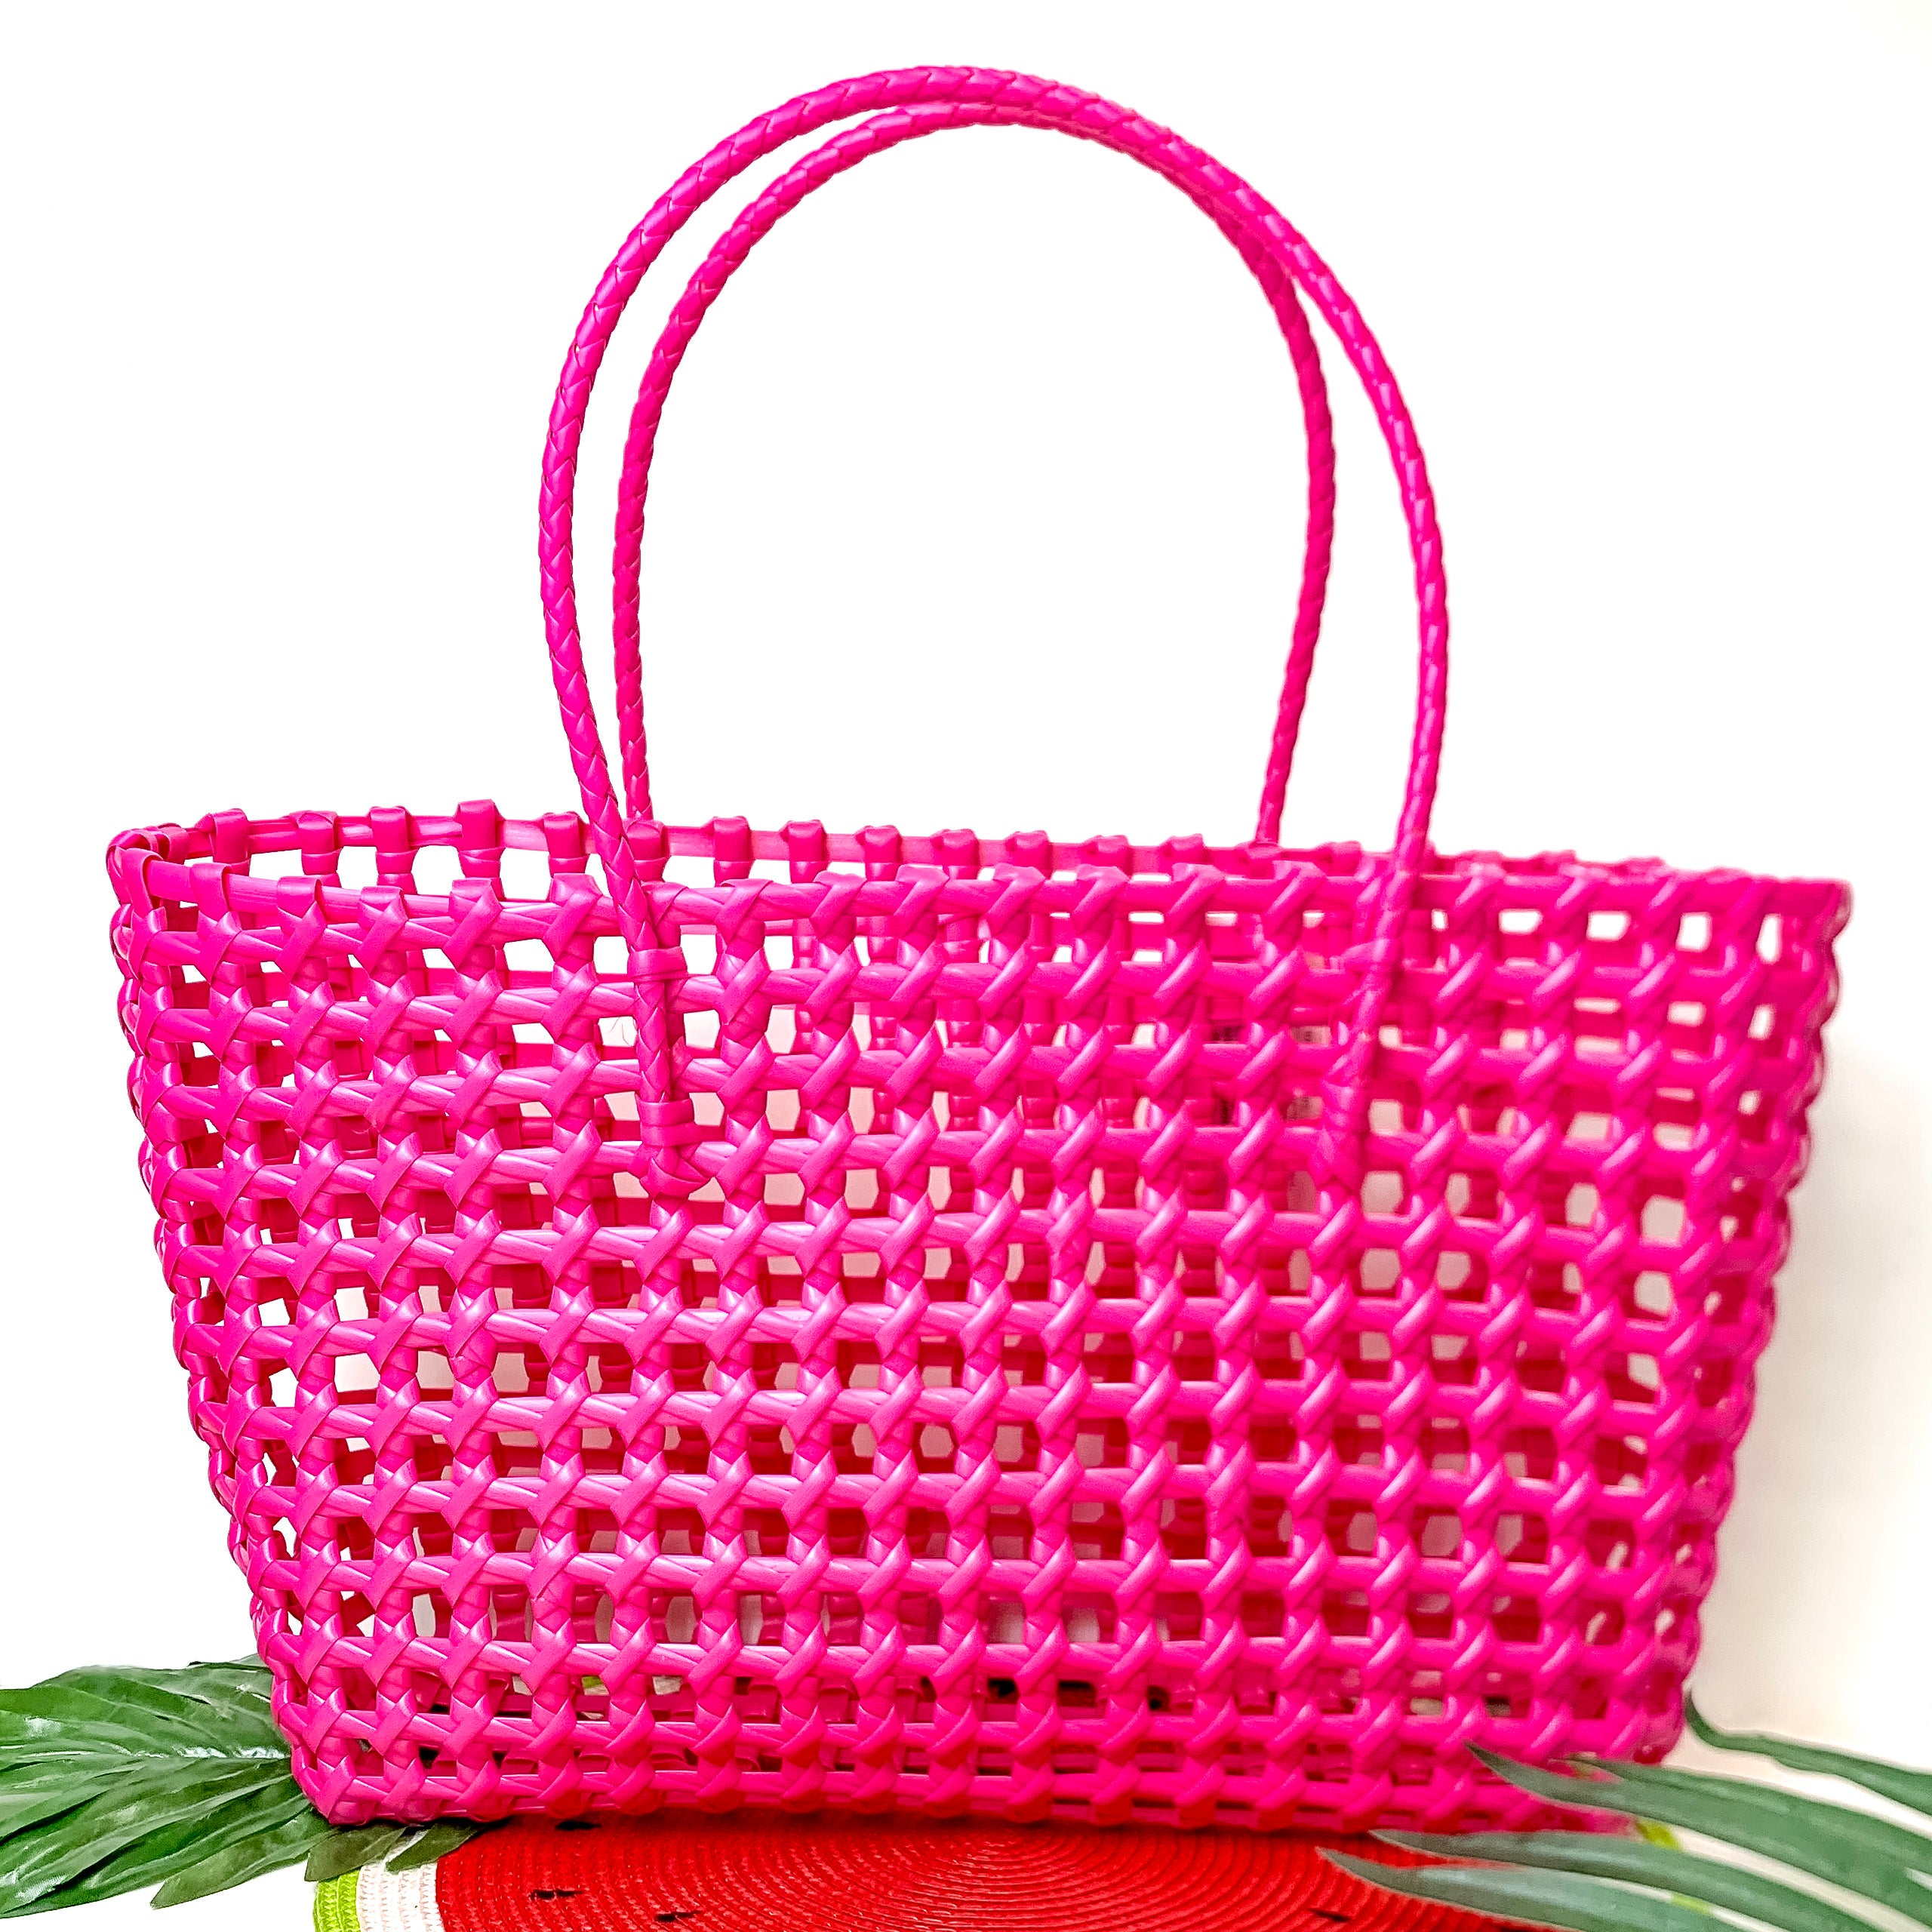 Beachy Brights Basket Tote Bag in Neon Pink